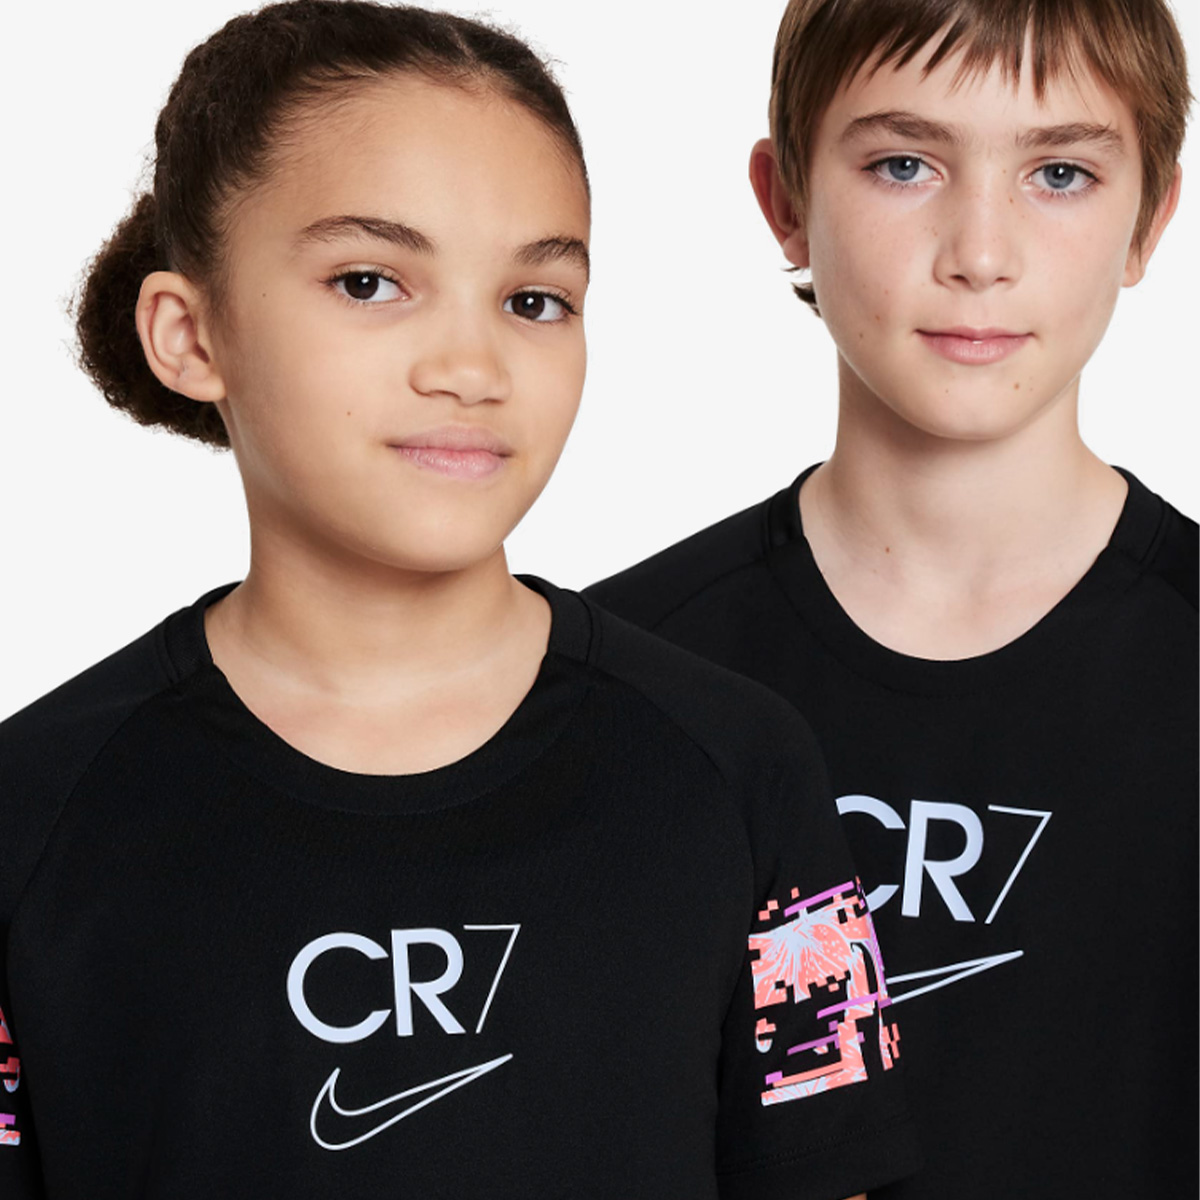 Nike CR7 